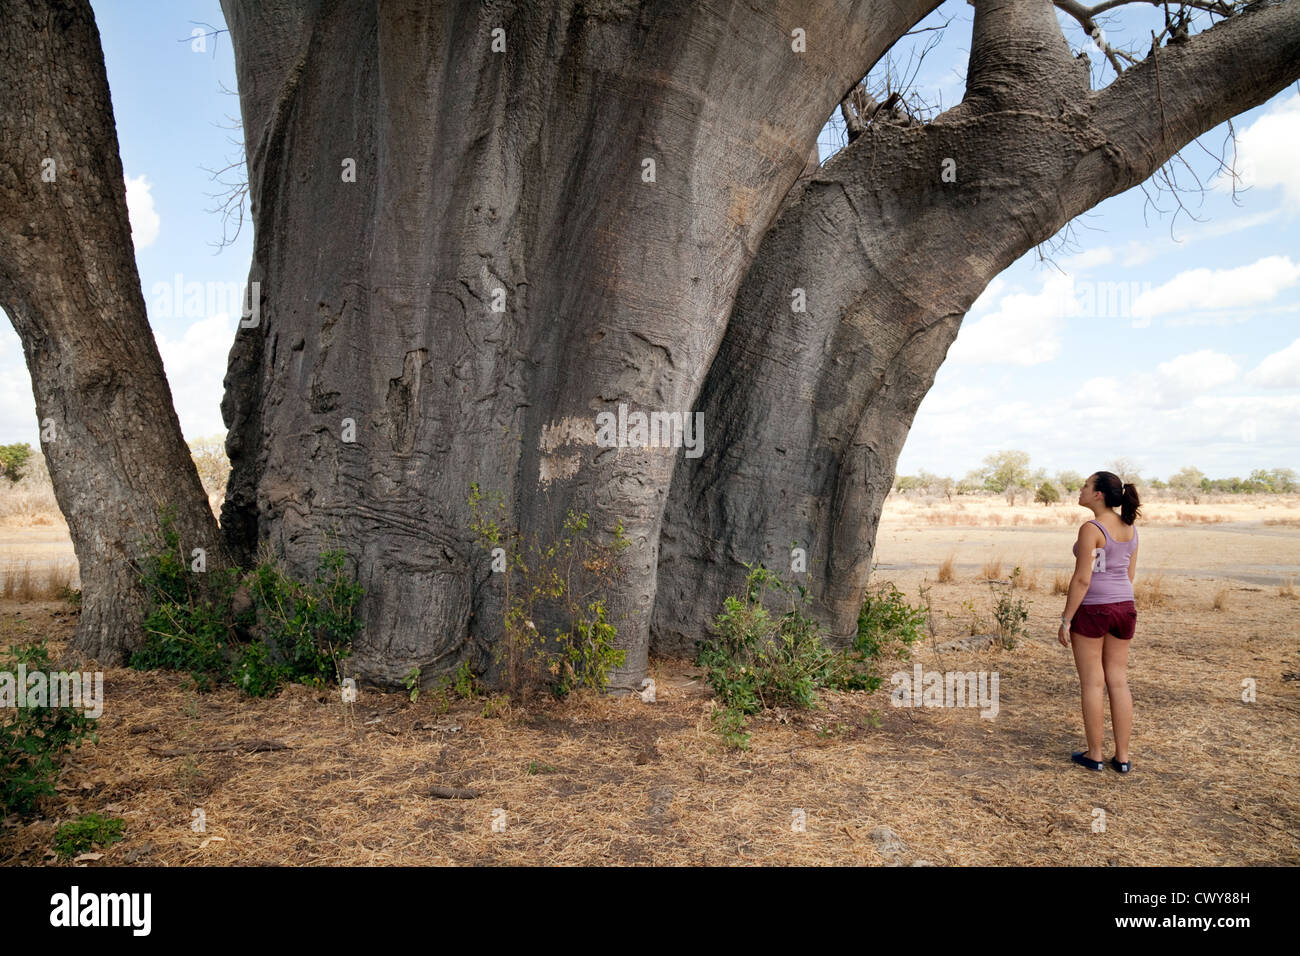 Ein junges Mädchen mit Blick auf einen sehr großen afrikanischen Baobab-Baum, 2600 Jahre alt, das Selous Game Reserve Tansania Afrika Stockfoto